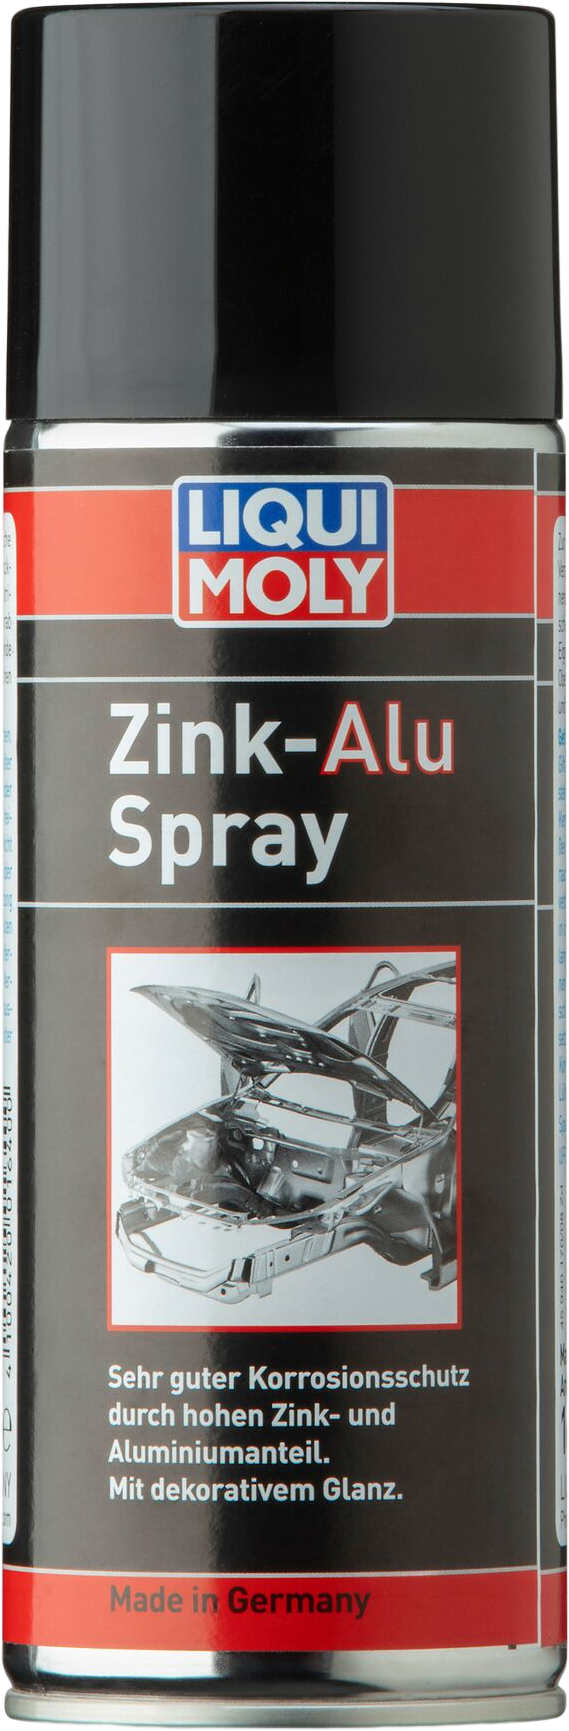 Liqui Moly Zink-aluminiumspray, 400 ml